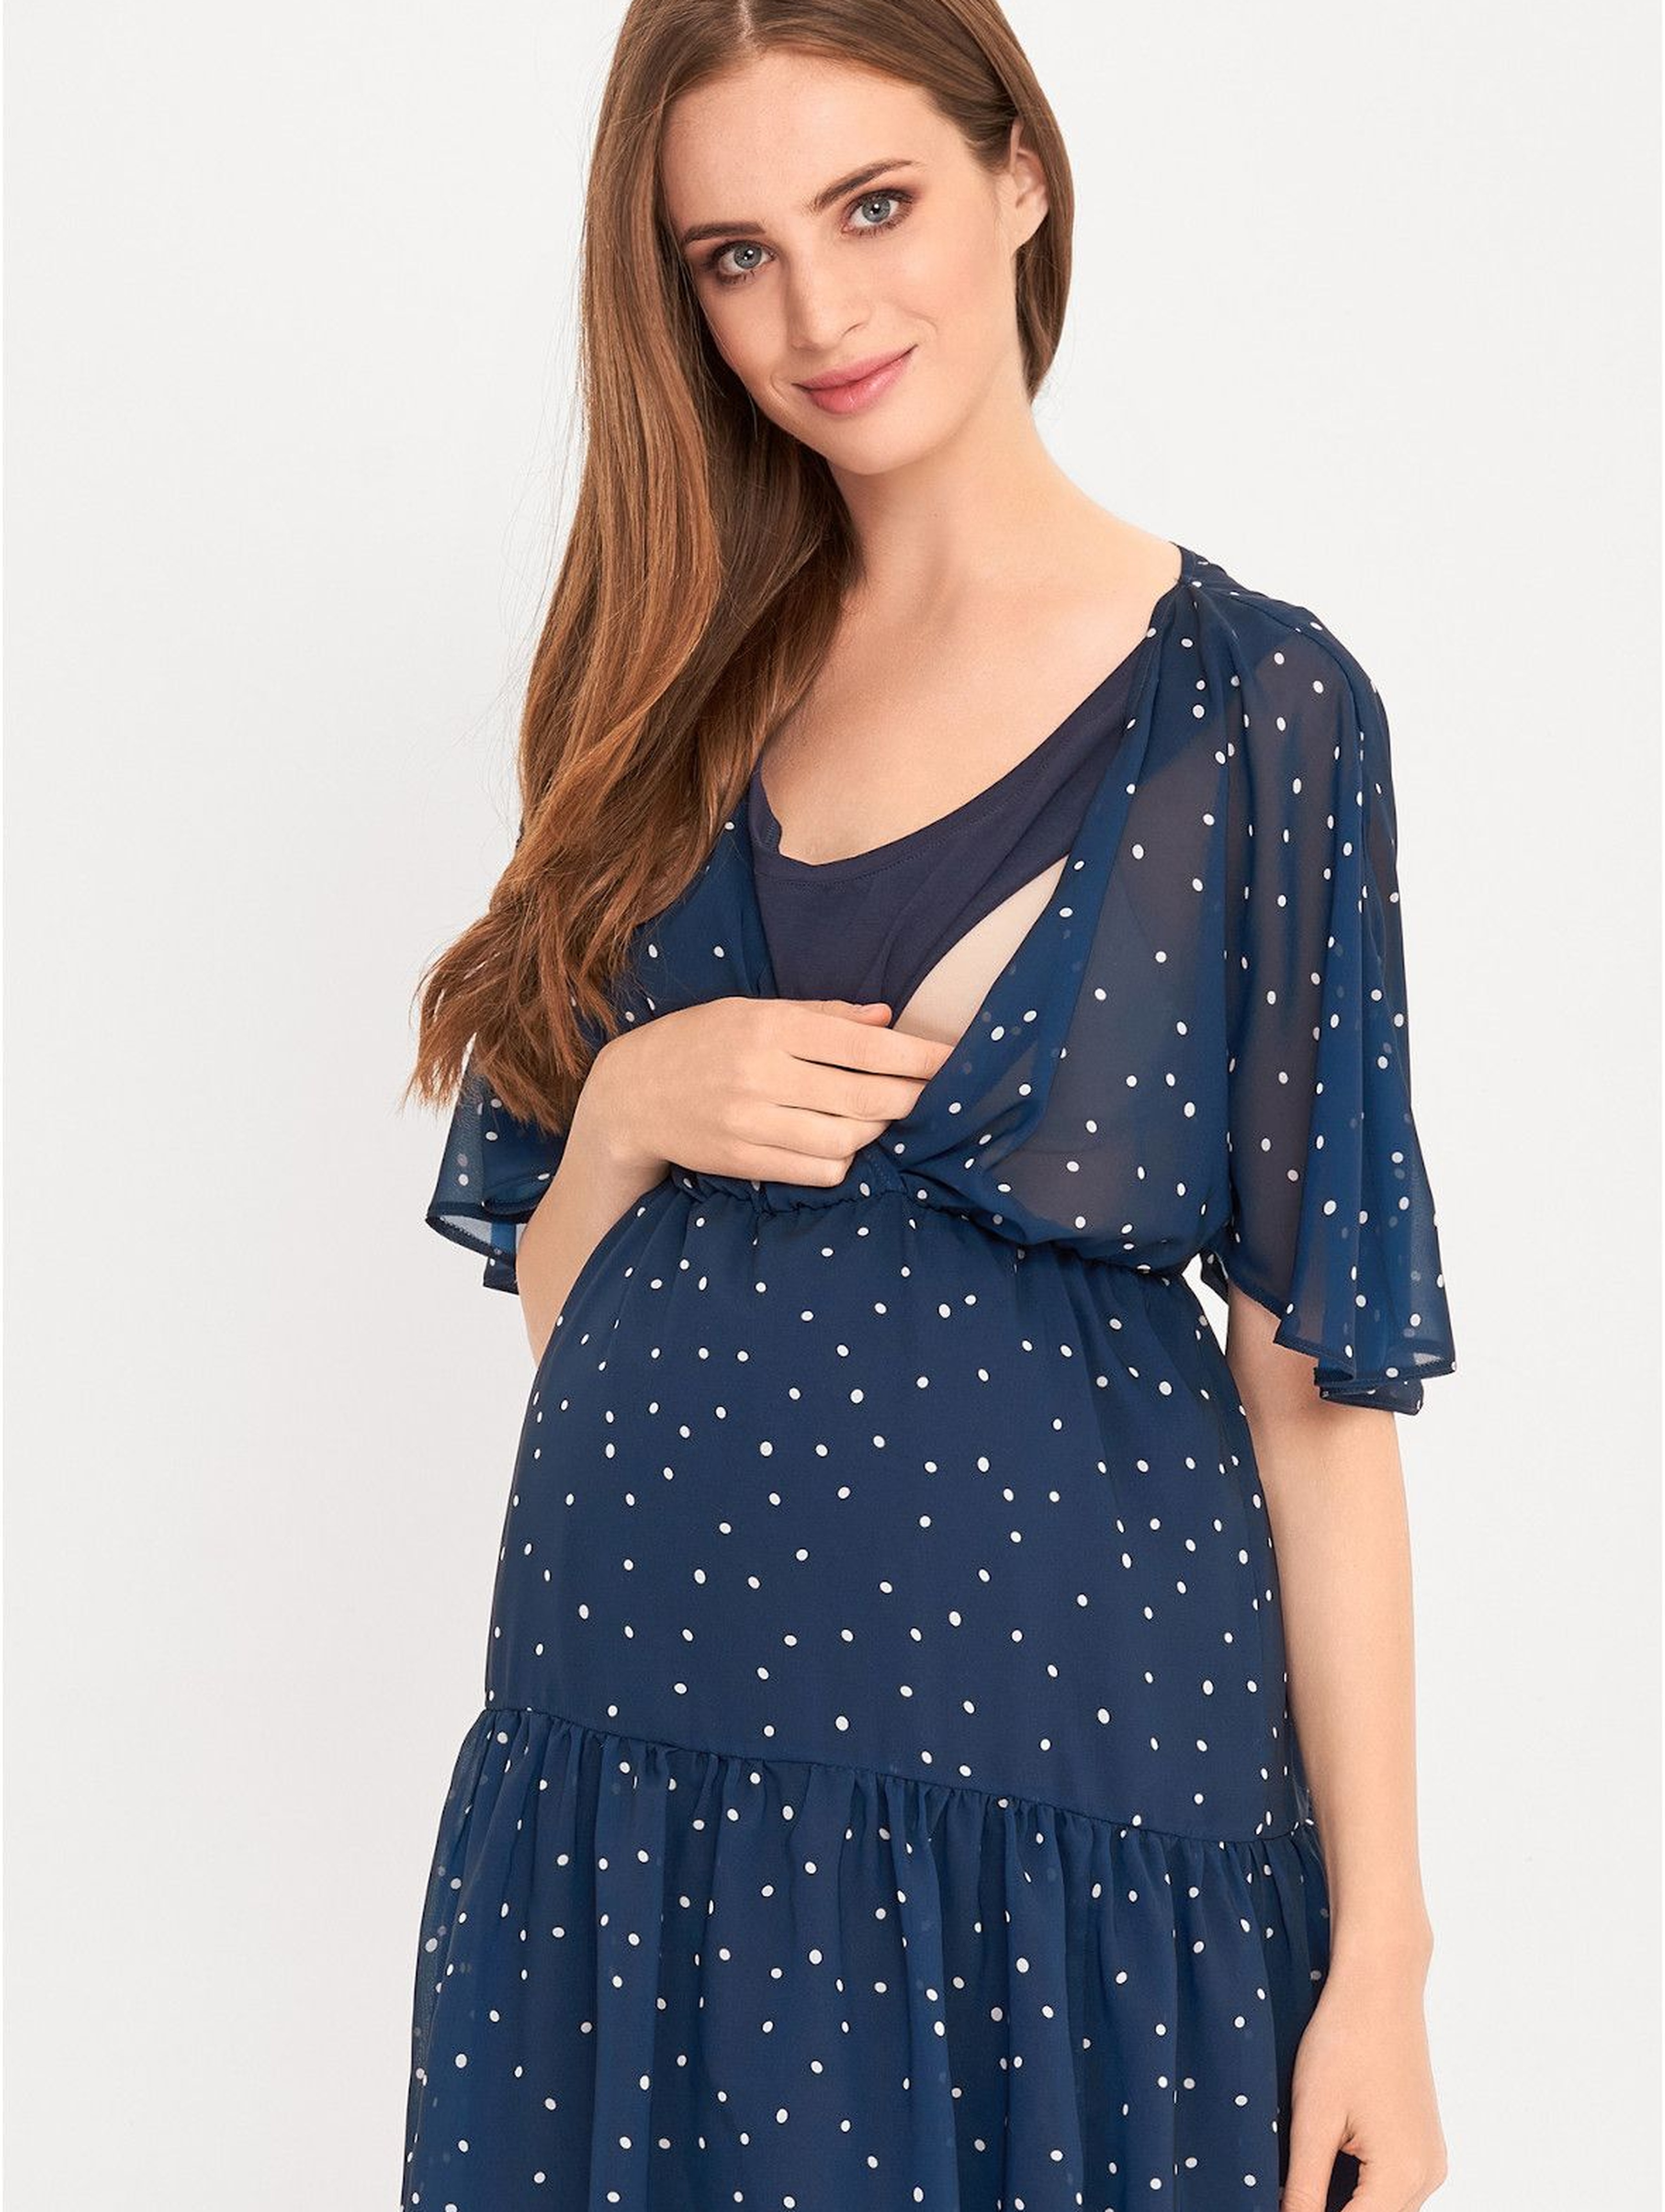 Sukienka ciążowa in dla karmiącej mamy- niebieska we kropeczki